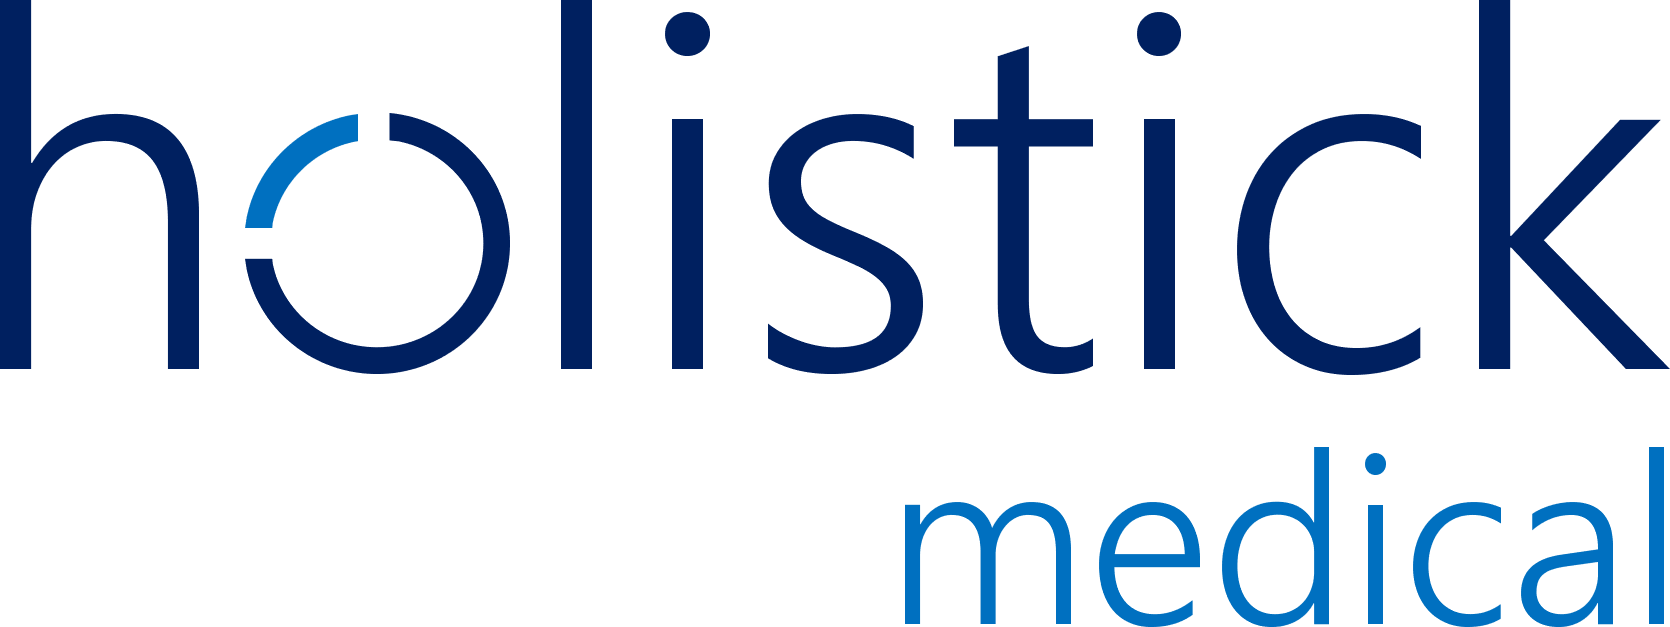 Holistick medical logo